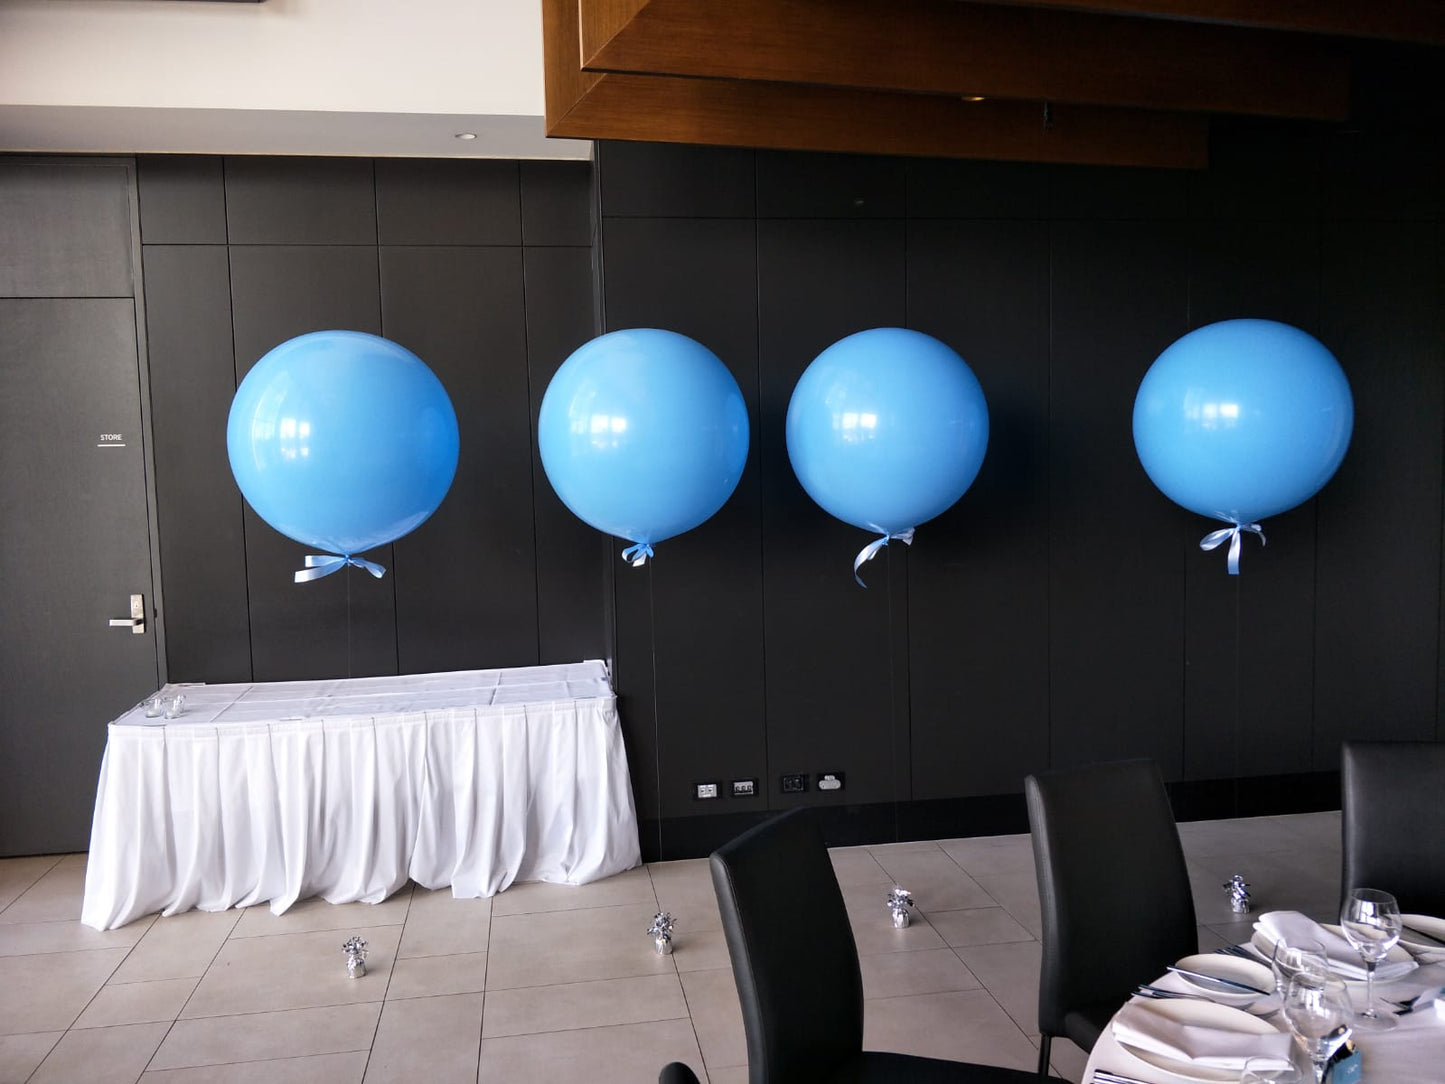 90cm Helium Balloons